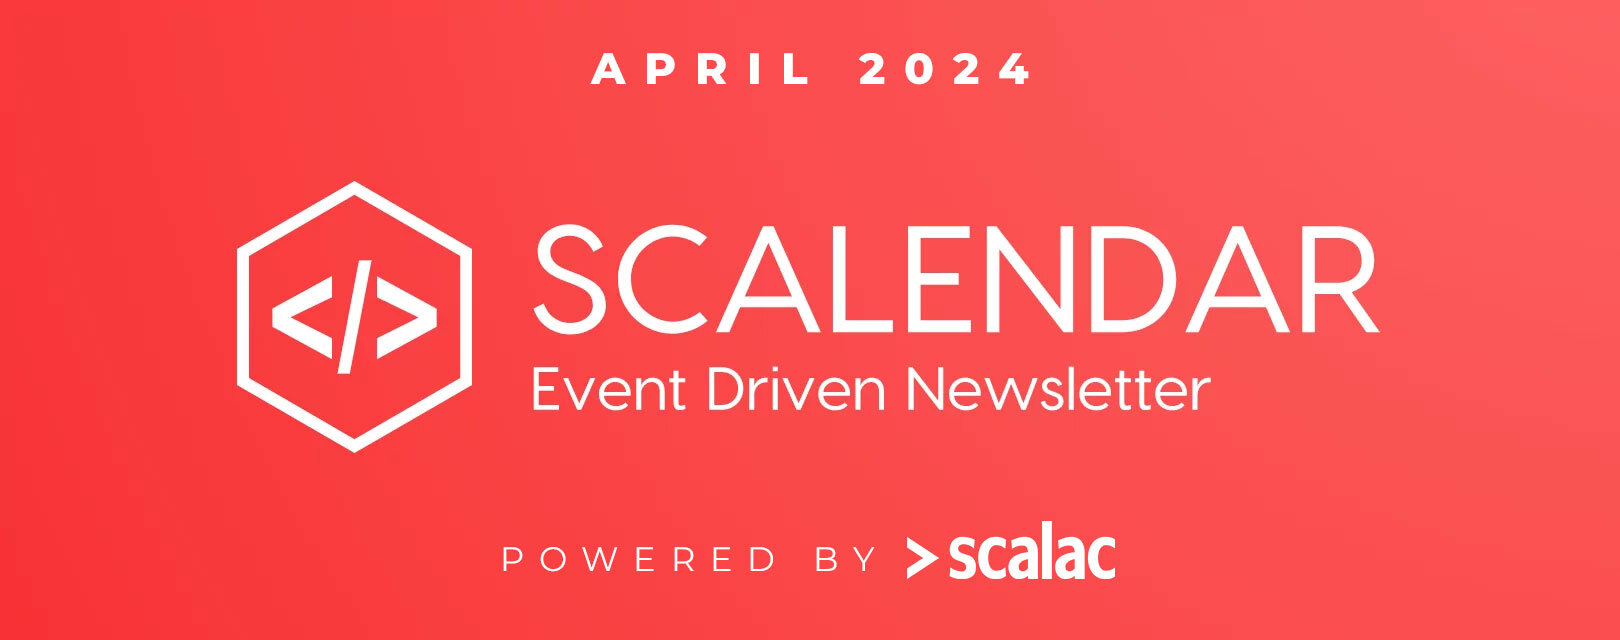 scala conferences april 2024